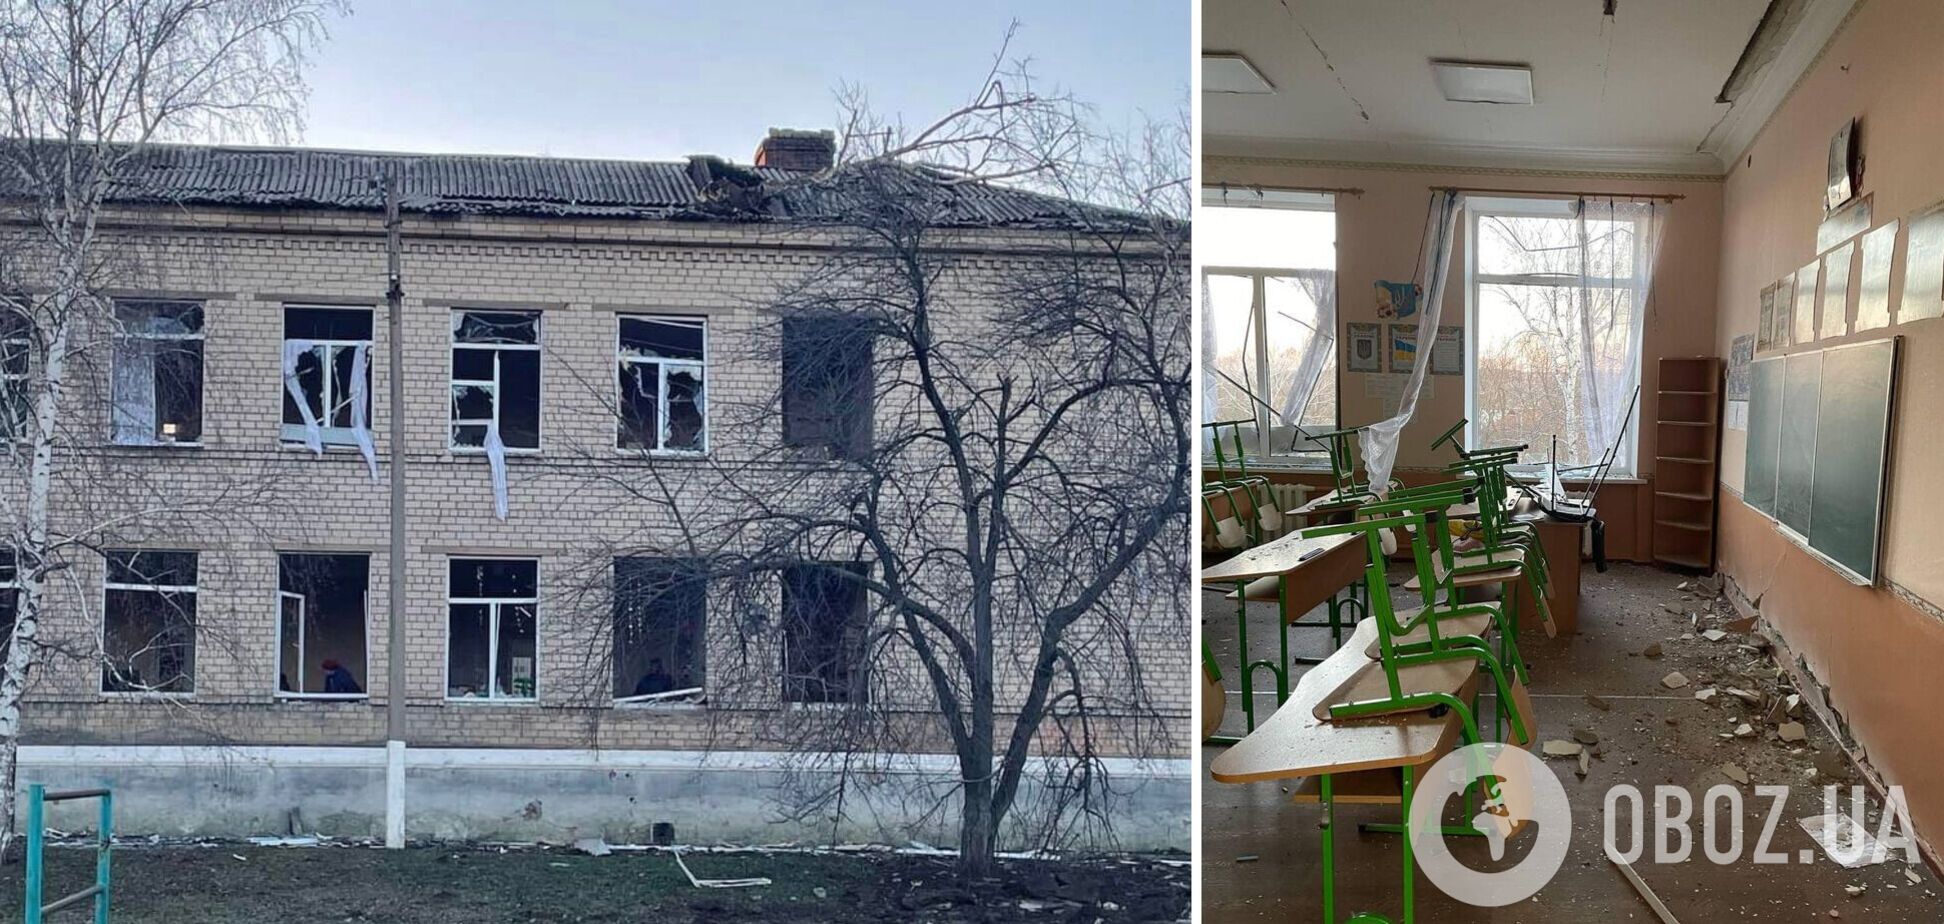 Війська РФ вдарили ракетами по школі у Краматорську, де облаштували 'Пункт незламності'. Фото та відео